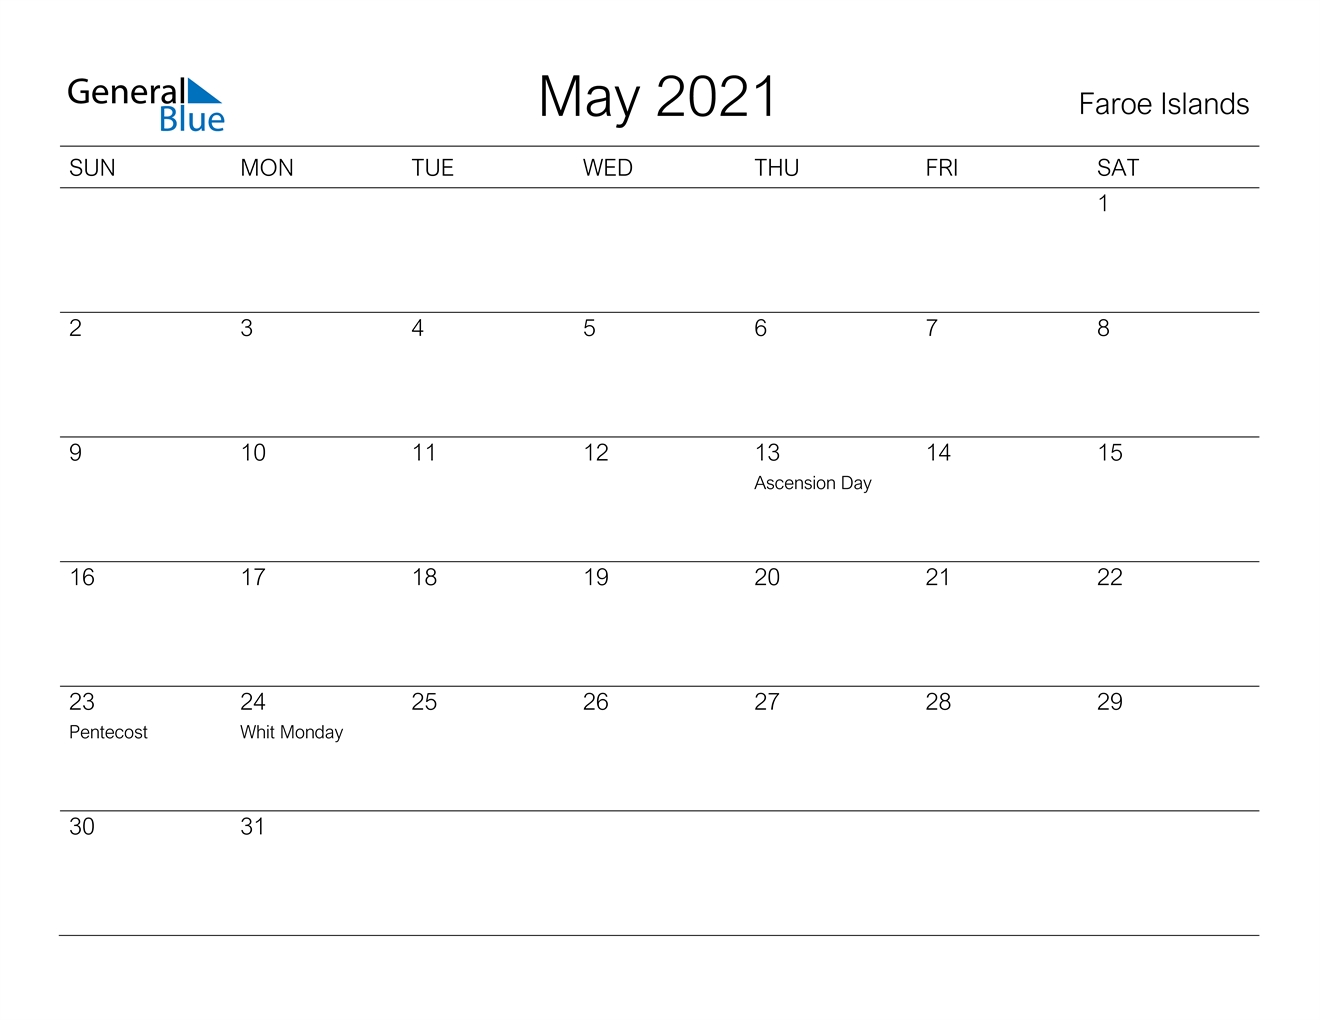 May 2021 Calendar - Faroe Islands